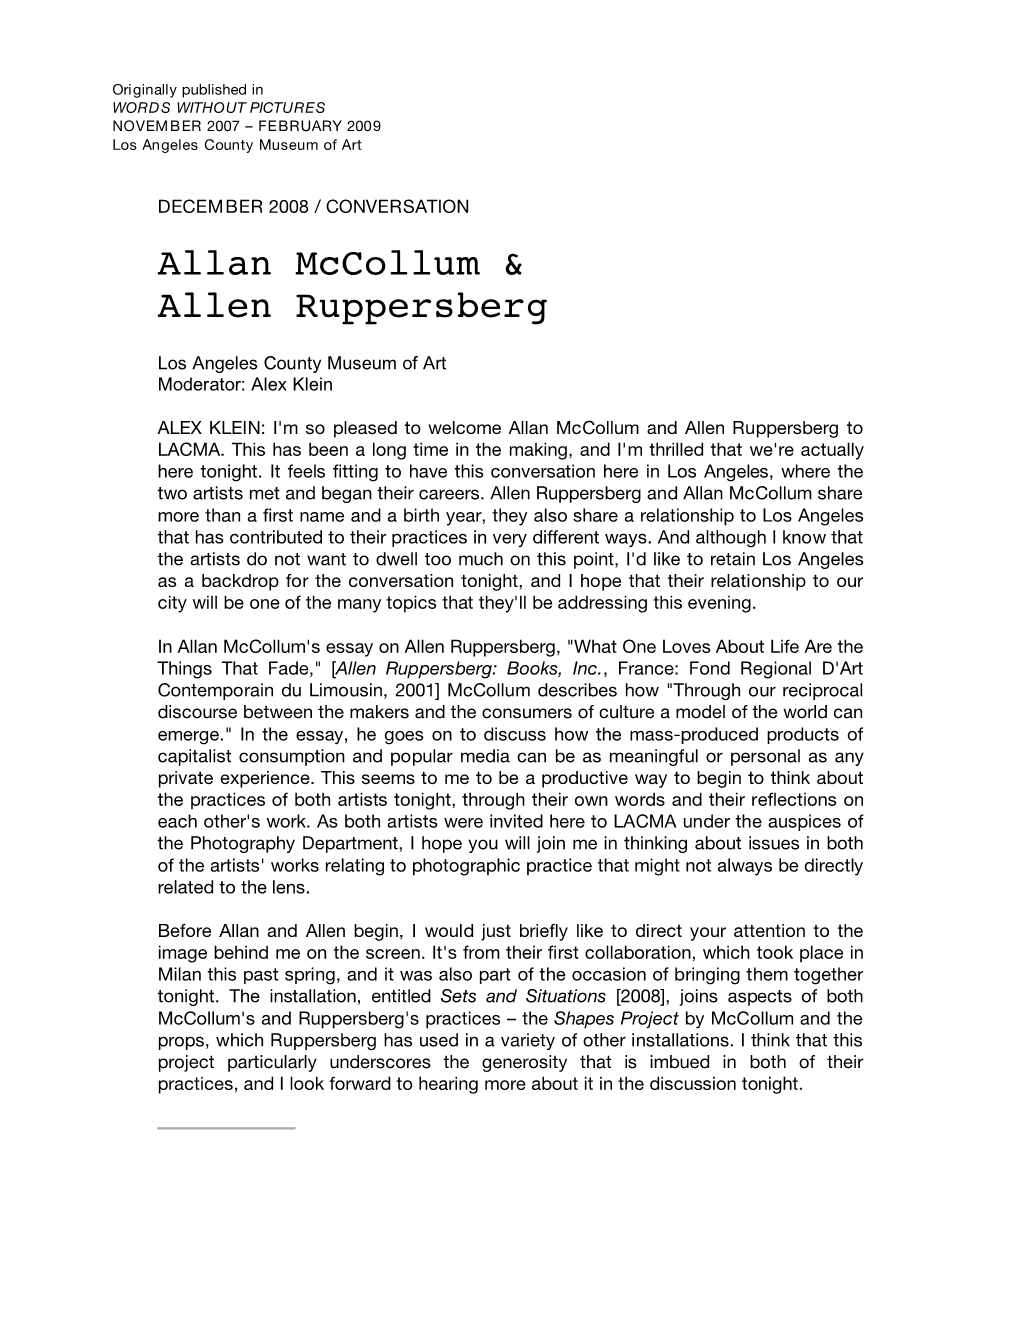 Allan Mccollum & Allen Ruppersberg